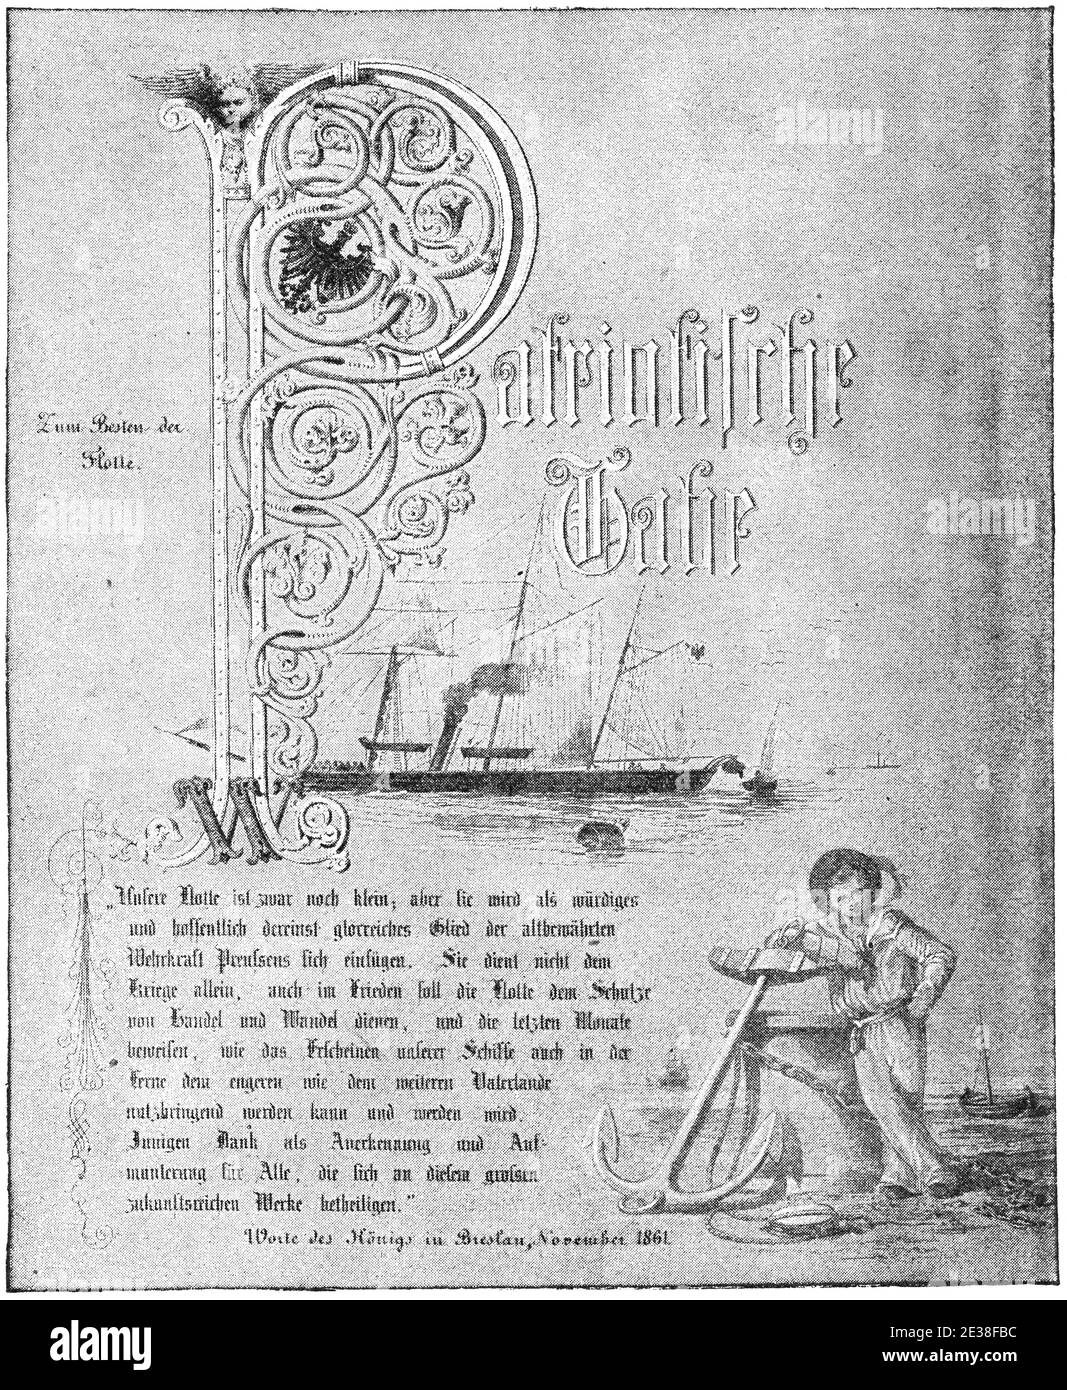 Discorso di Guglielmo i, imperatore tedesco che commemora il relitto di SMS Amazzone (1843) nel novembre 1861 al largo delle coste olandesi. Illustrazione del 19 ° secolo. Germania. Sfondo bianco. Foto Stock